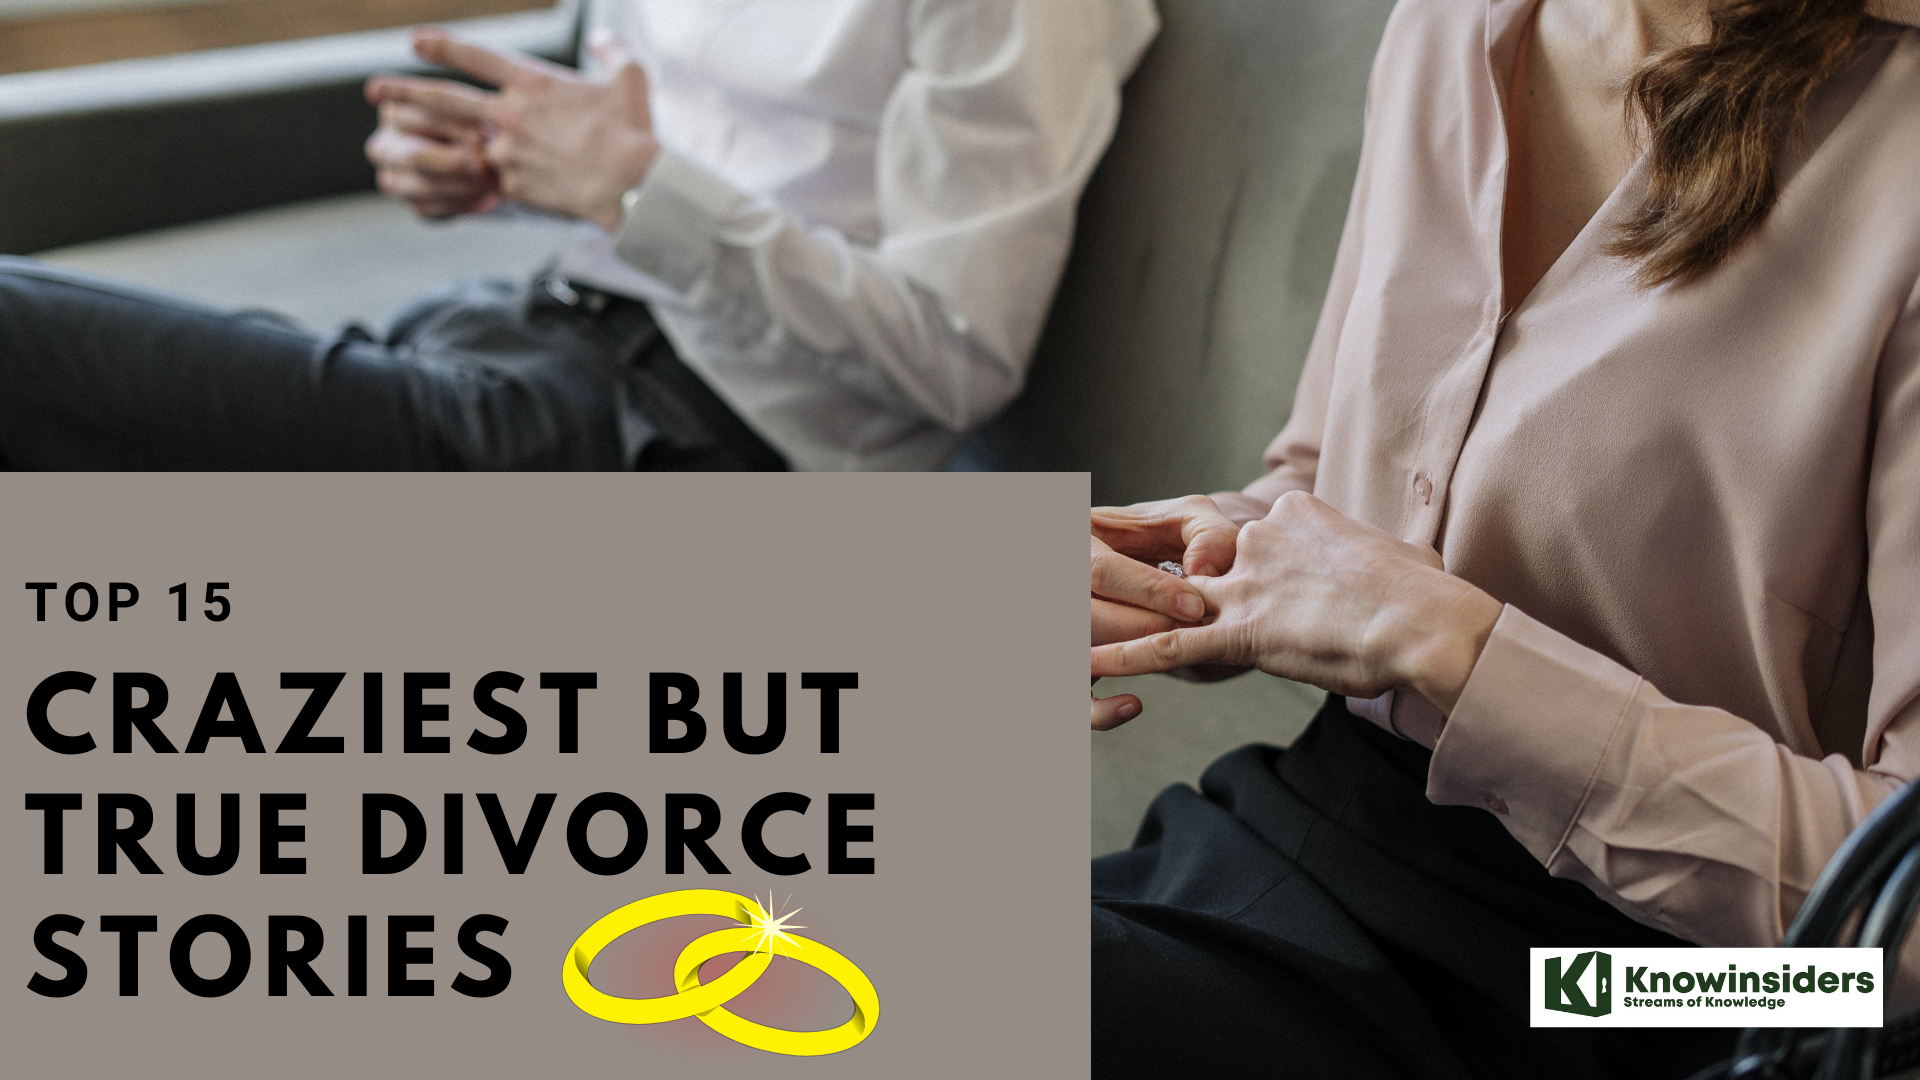 Top 15 Craziest But True Divorce Stories